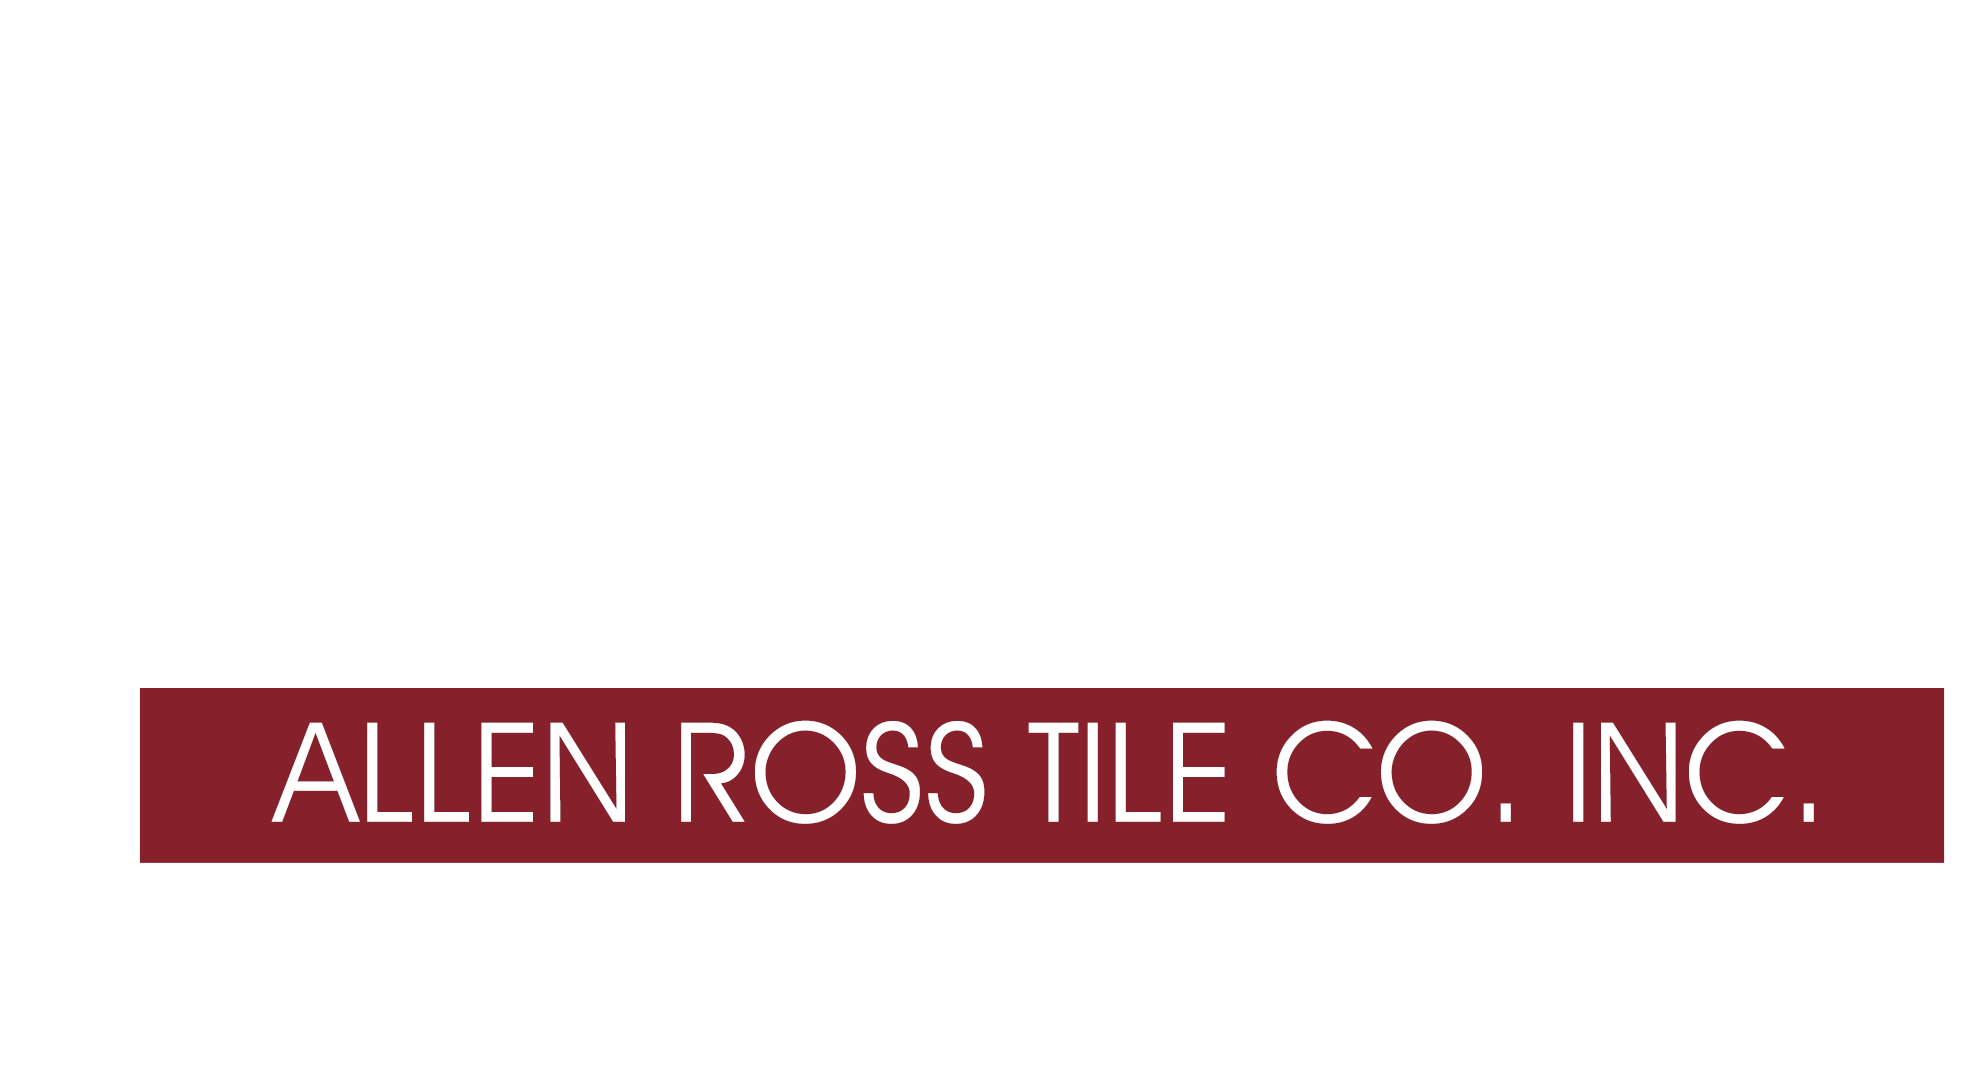 Allen Ross Tile Co. Inc.